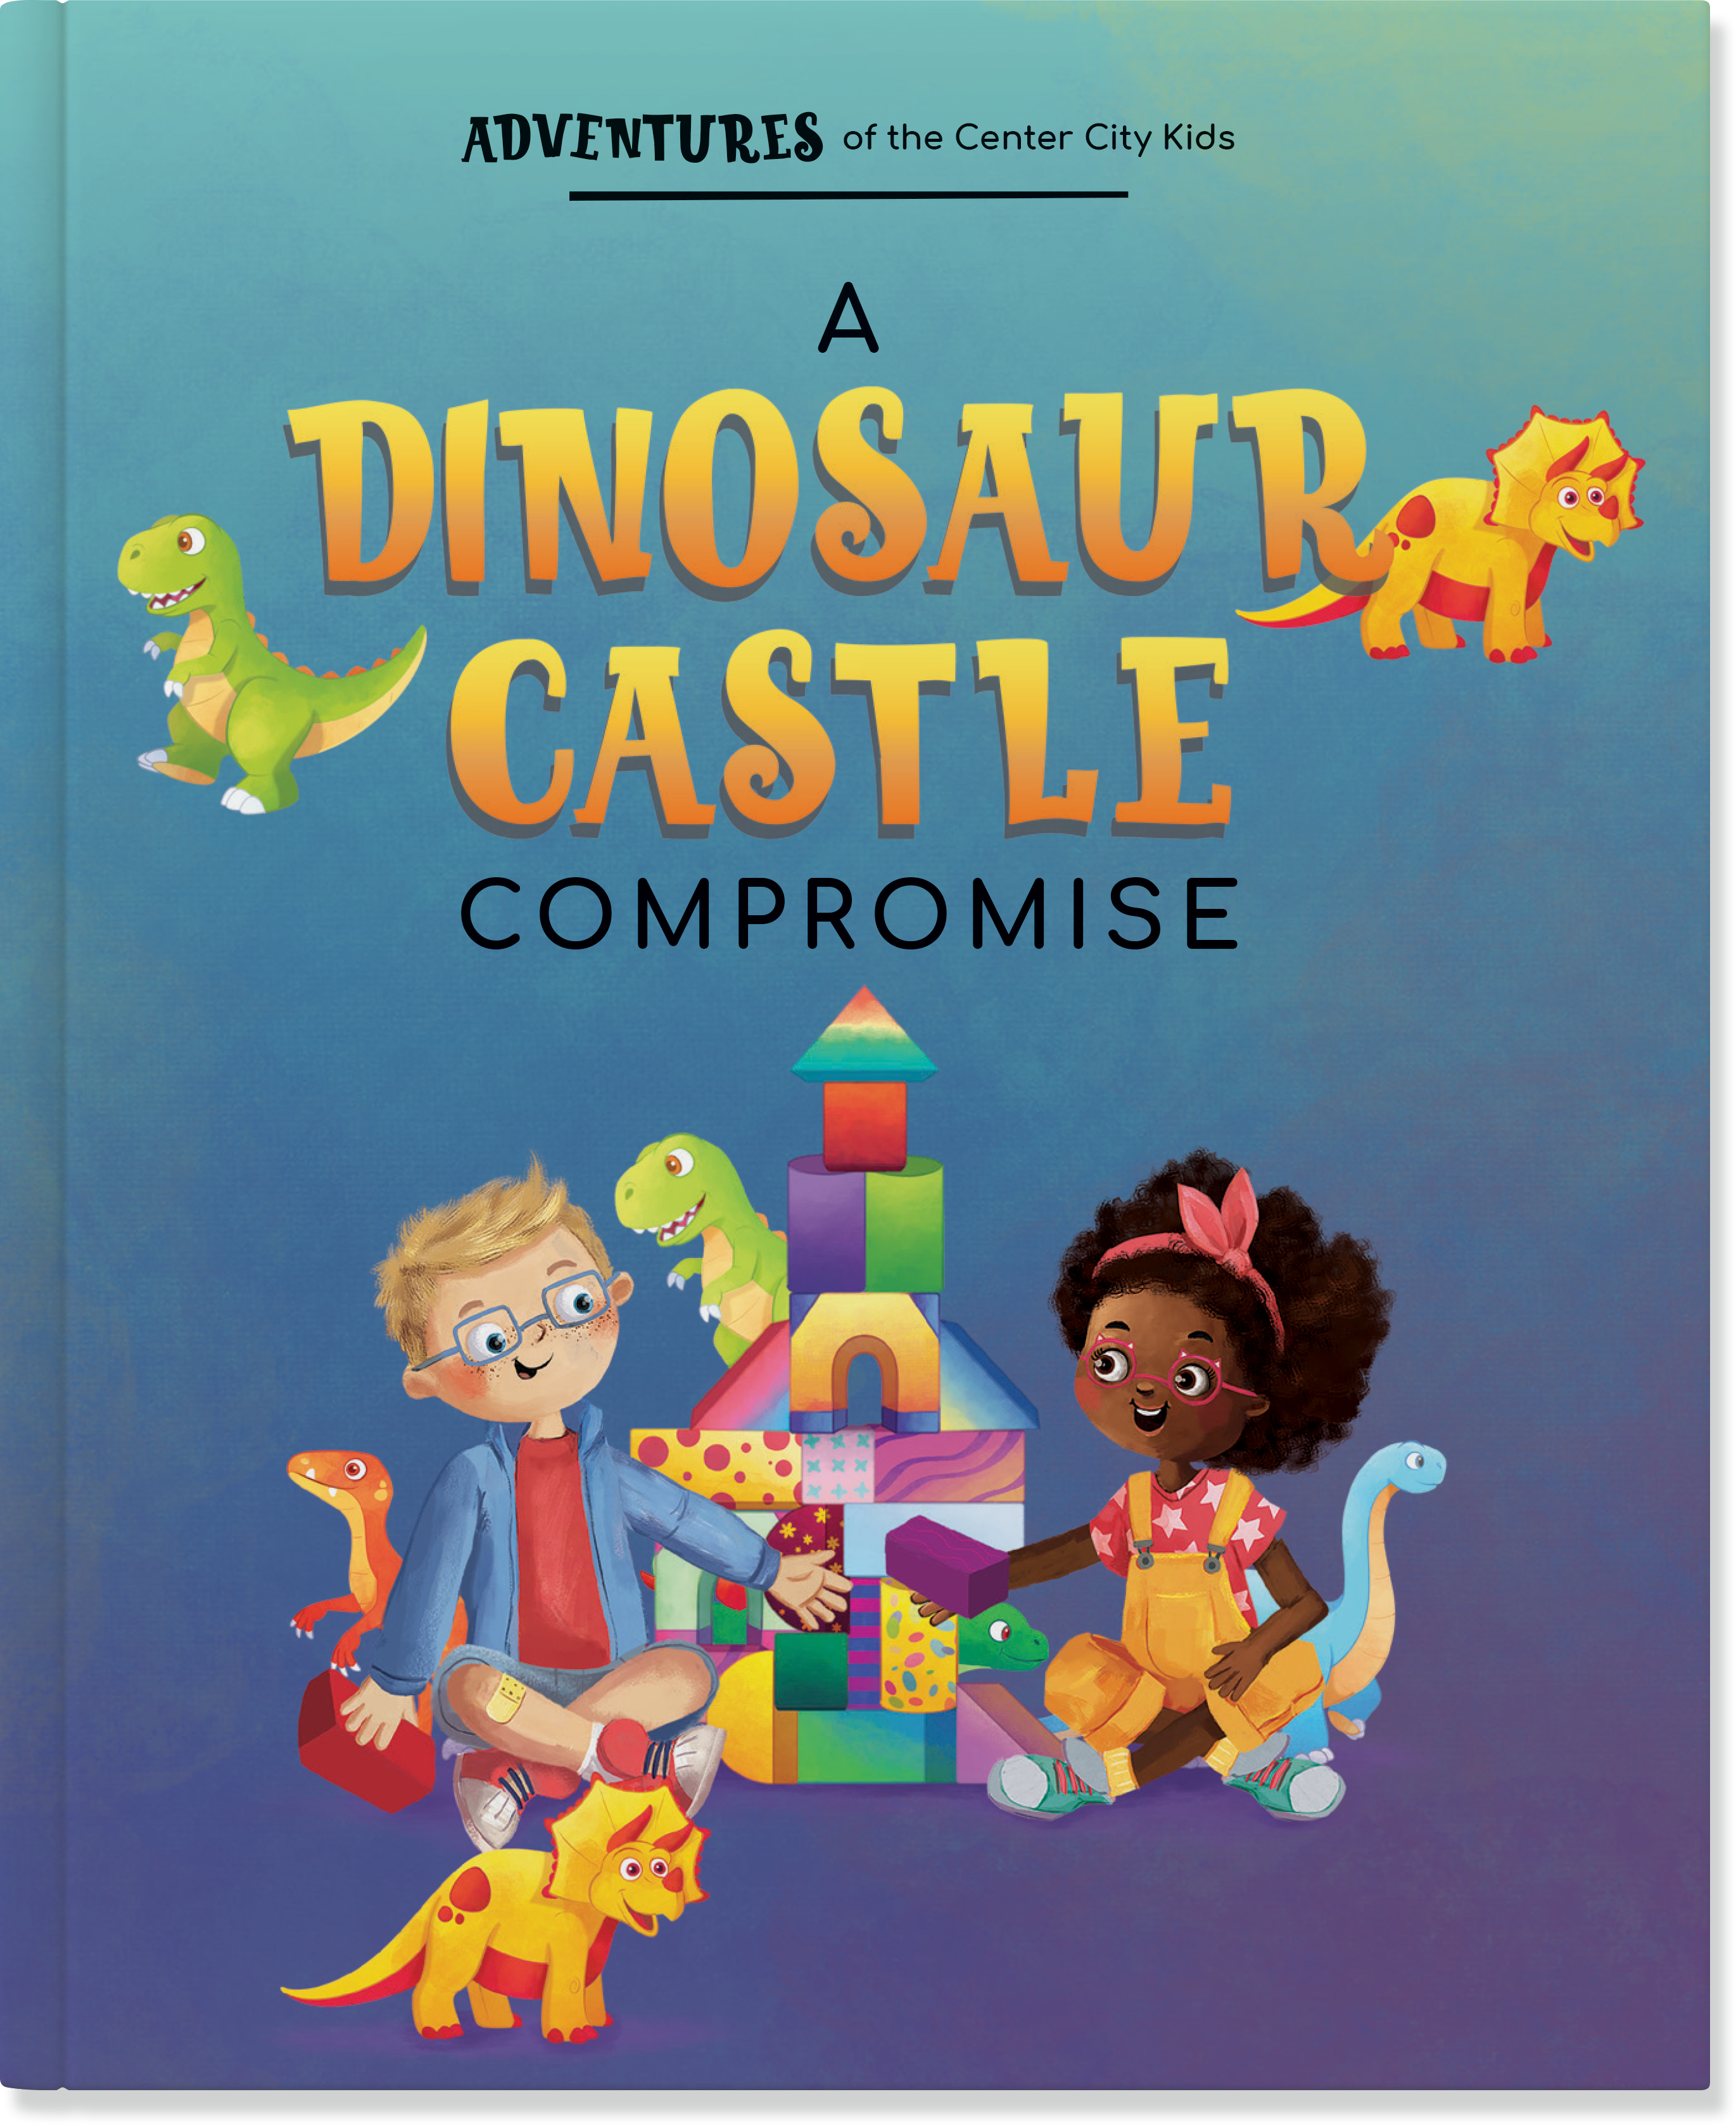 A Dinosaur Castle Comprise